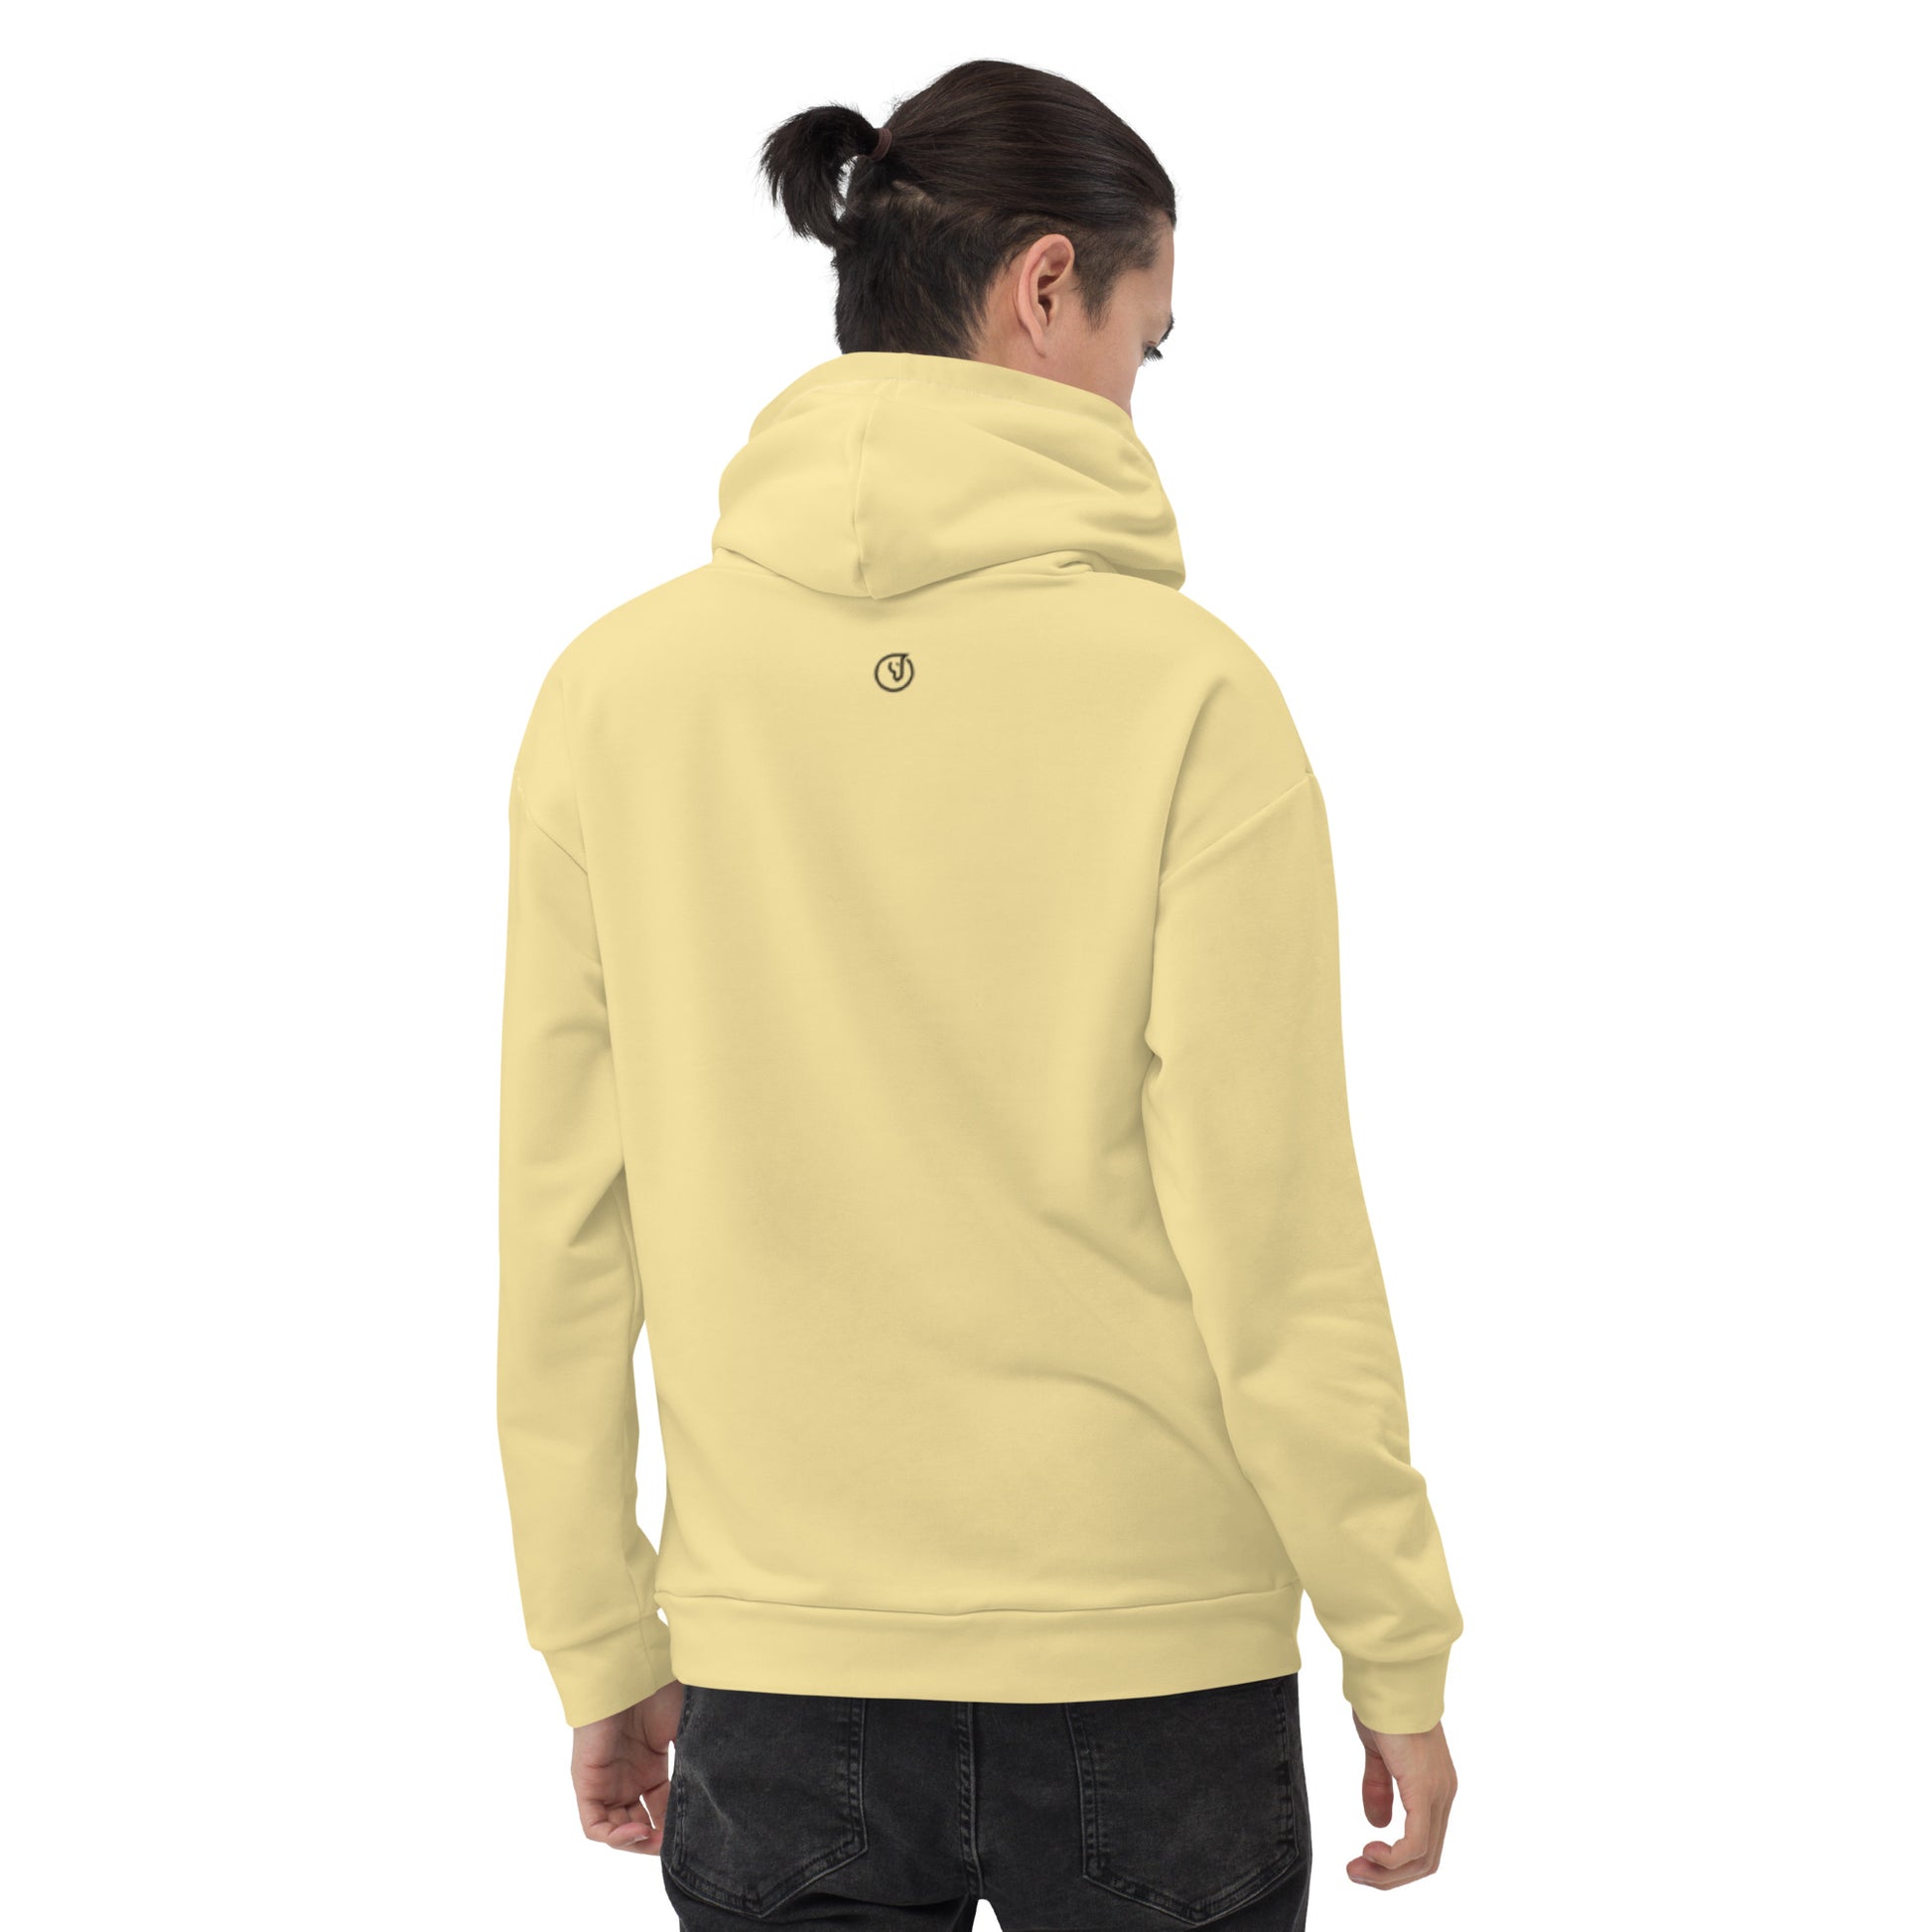 Humble Sportswear™ Men's Flax Yellow Fleece Hoodie - Mireille Fine Art